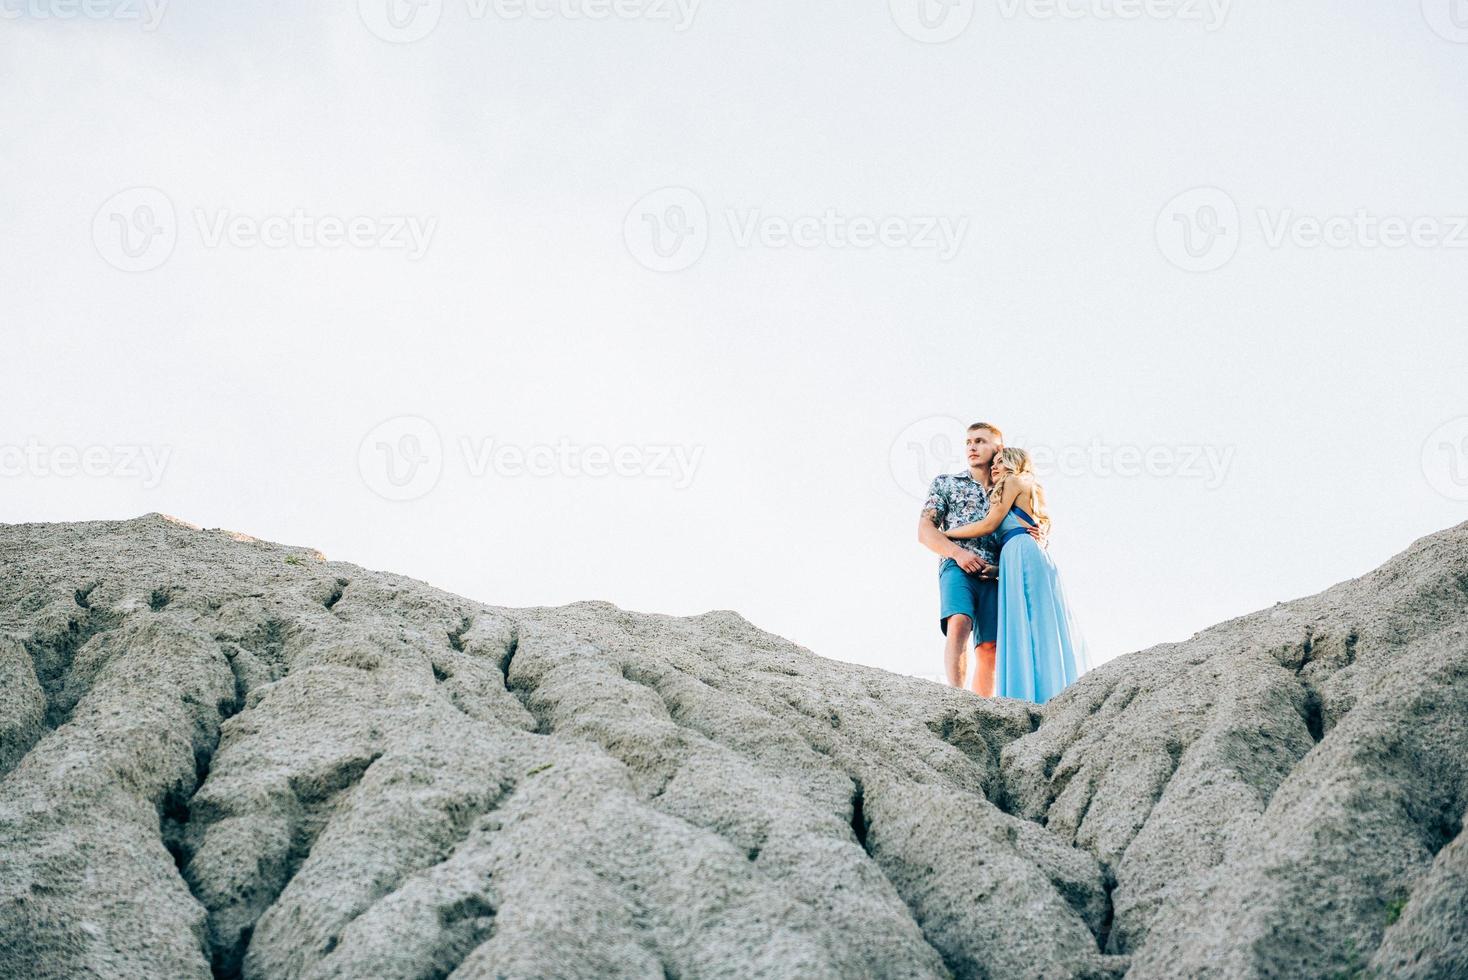 blond tjej i en ljusblå klänning och en kille i en ljus skjorta i ett granitbrott foto